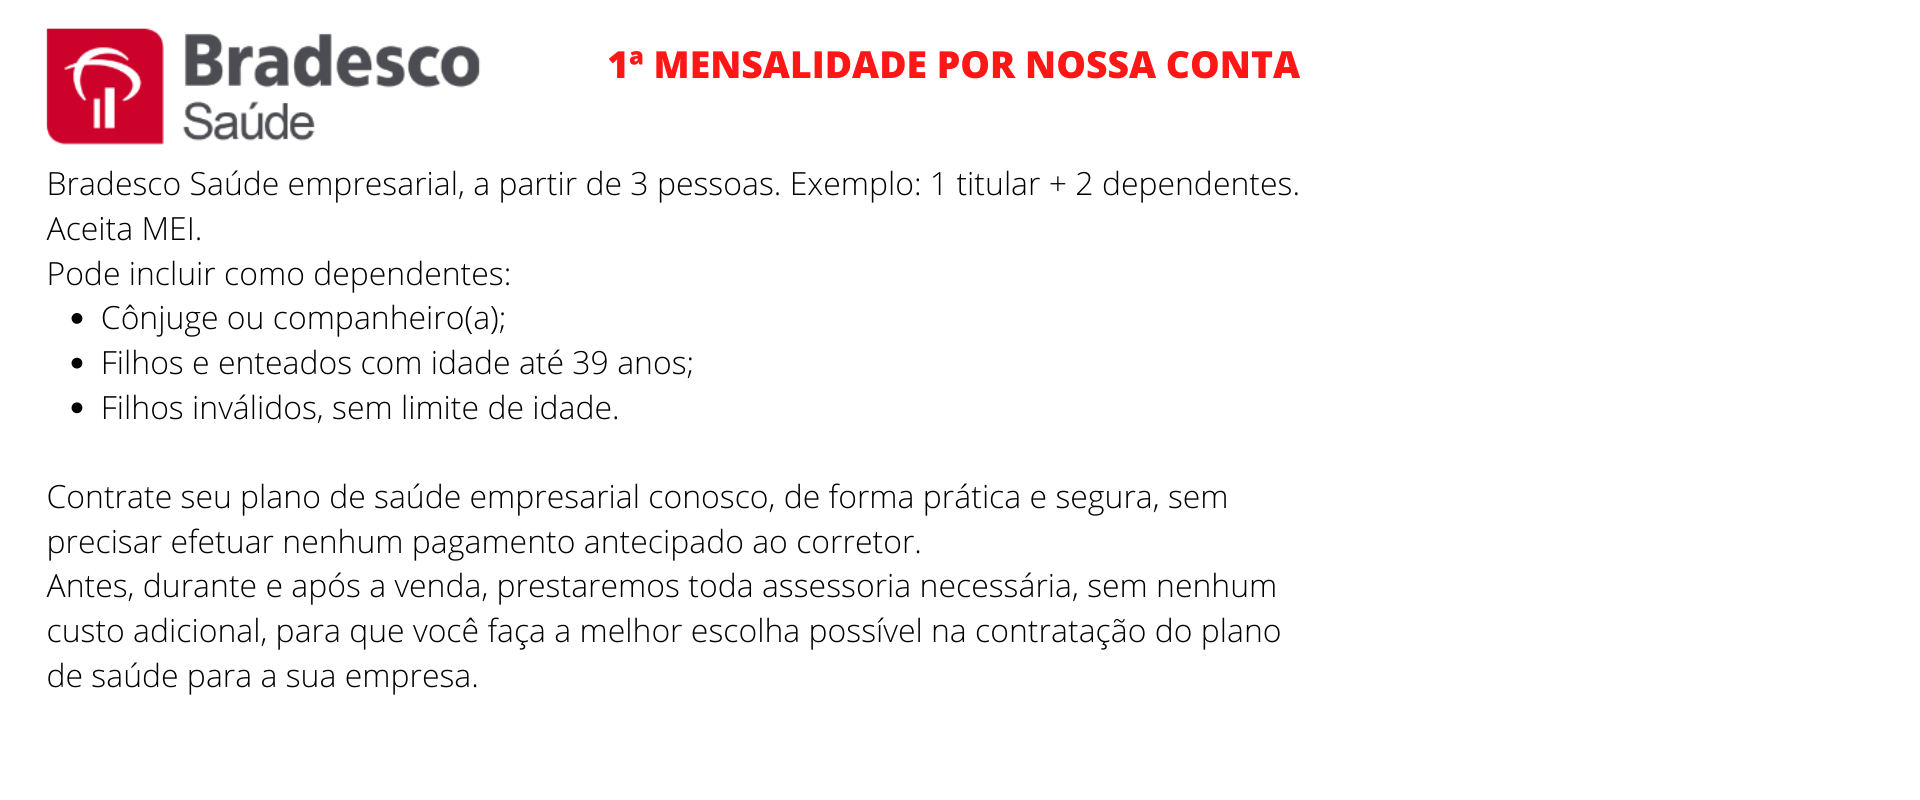 Bradesco Saúde Empresarial - Santo Antônio do Descoberto  